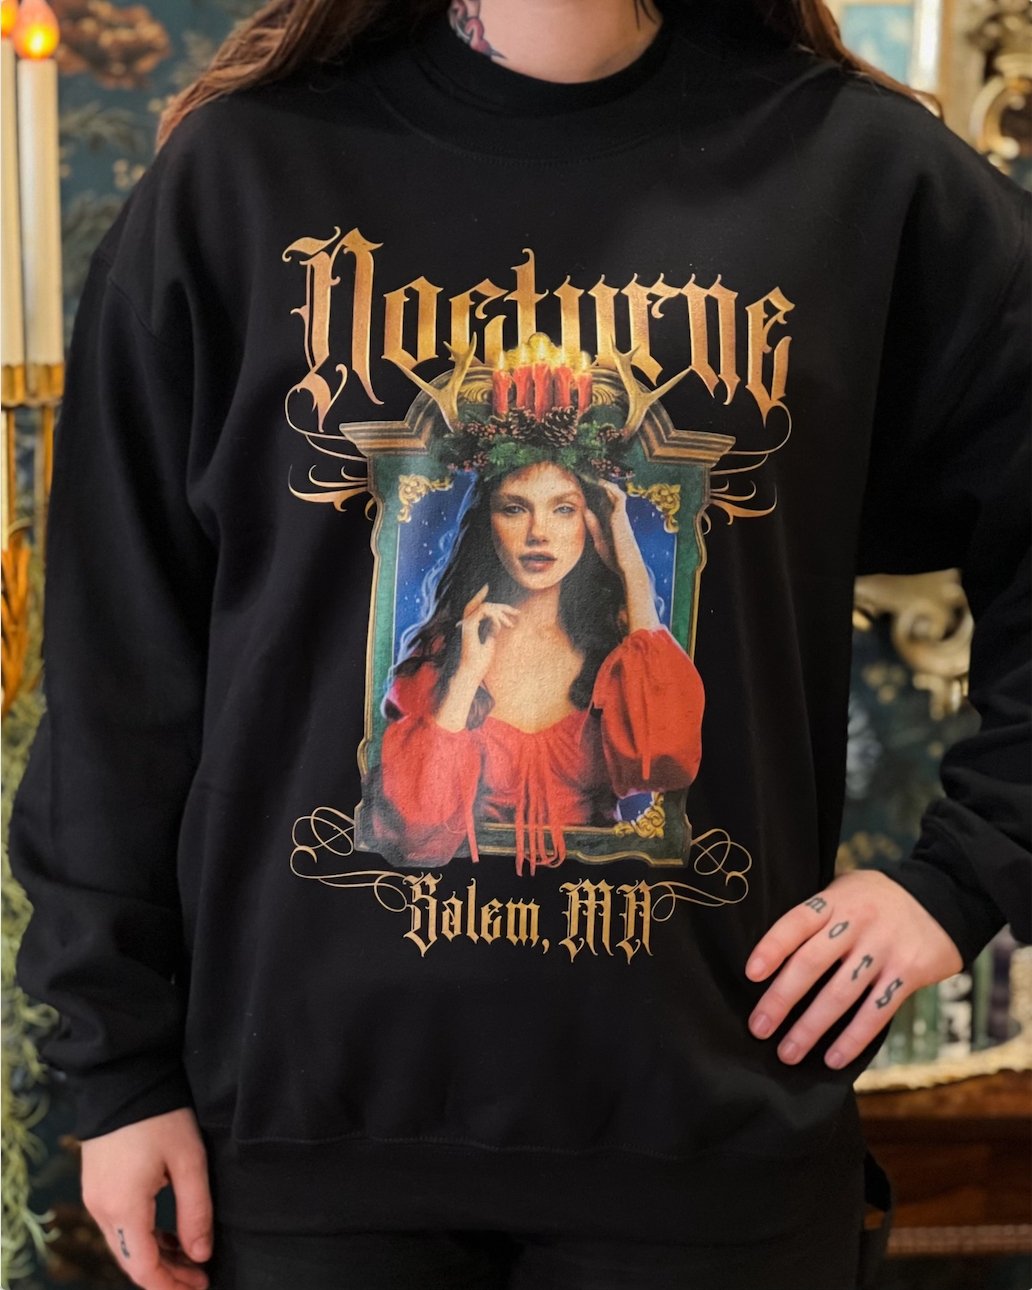 Nocturne Sweatshirt by Wonder Witch Boutique - Nocturne LLC